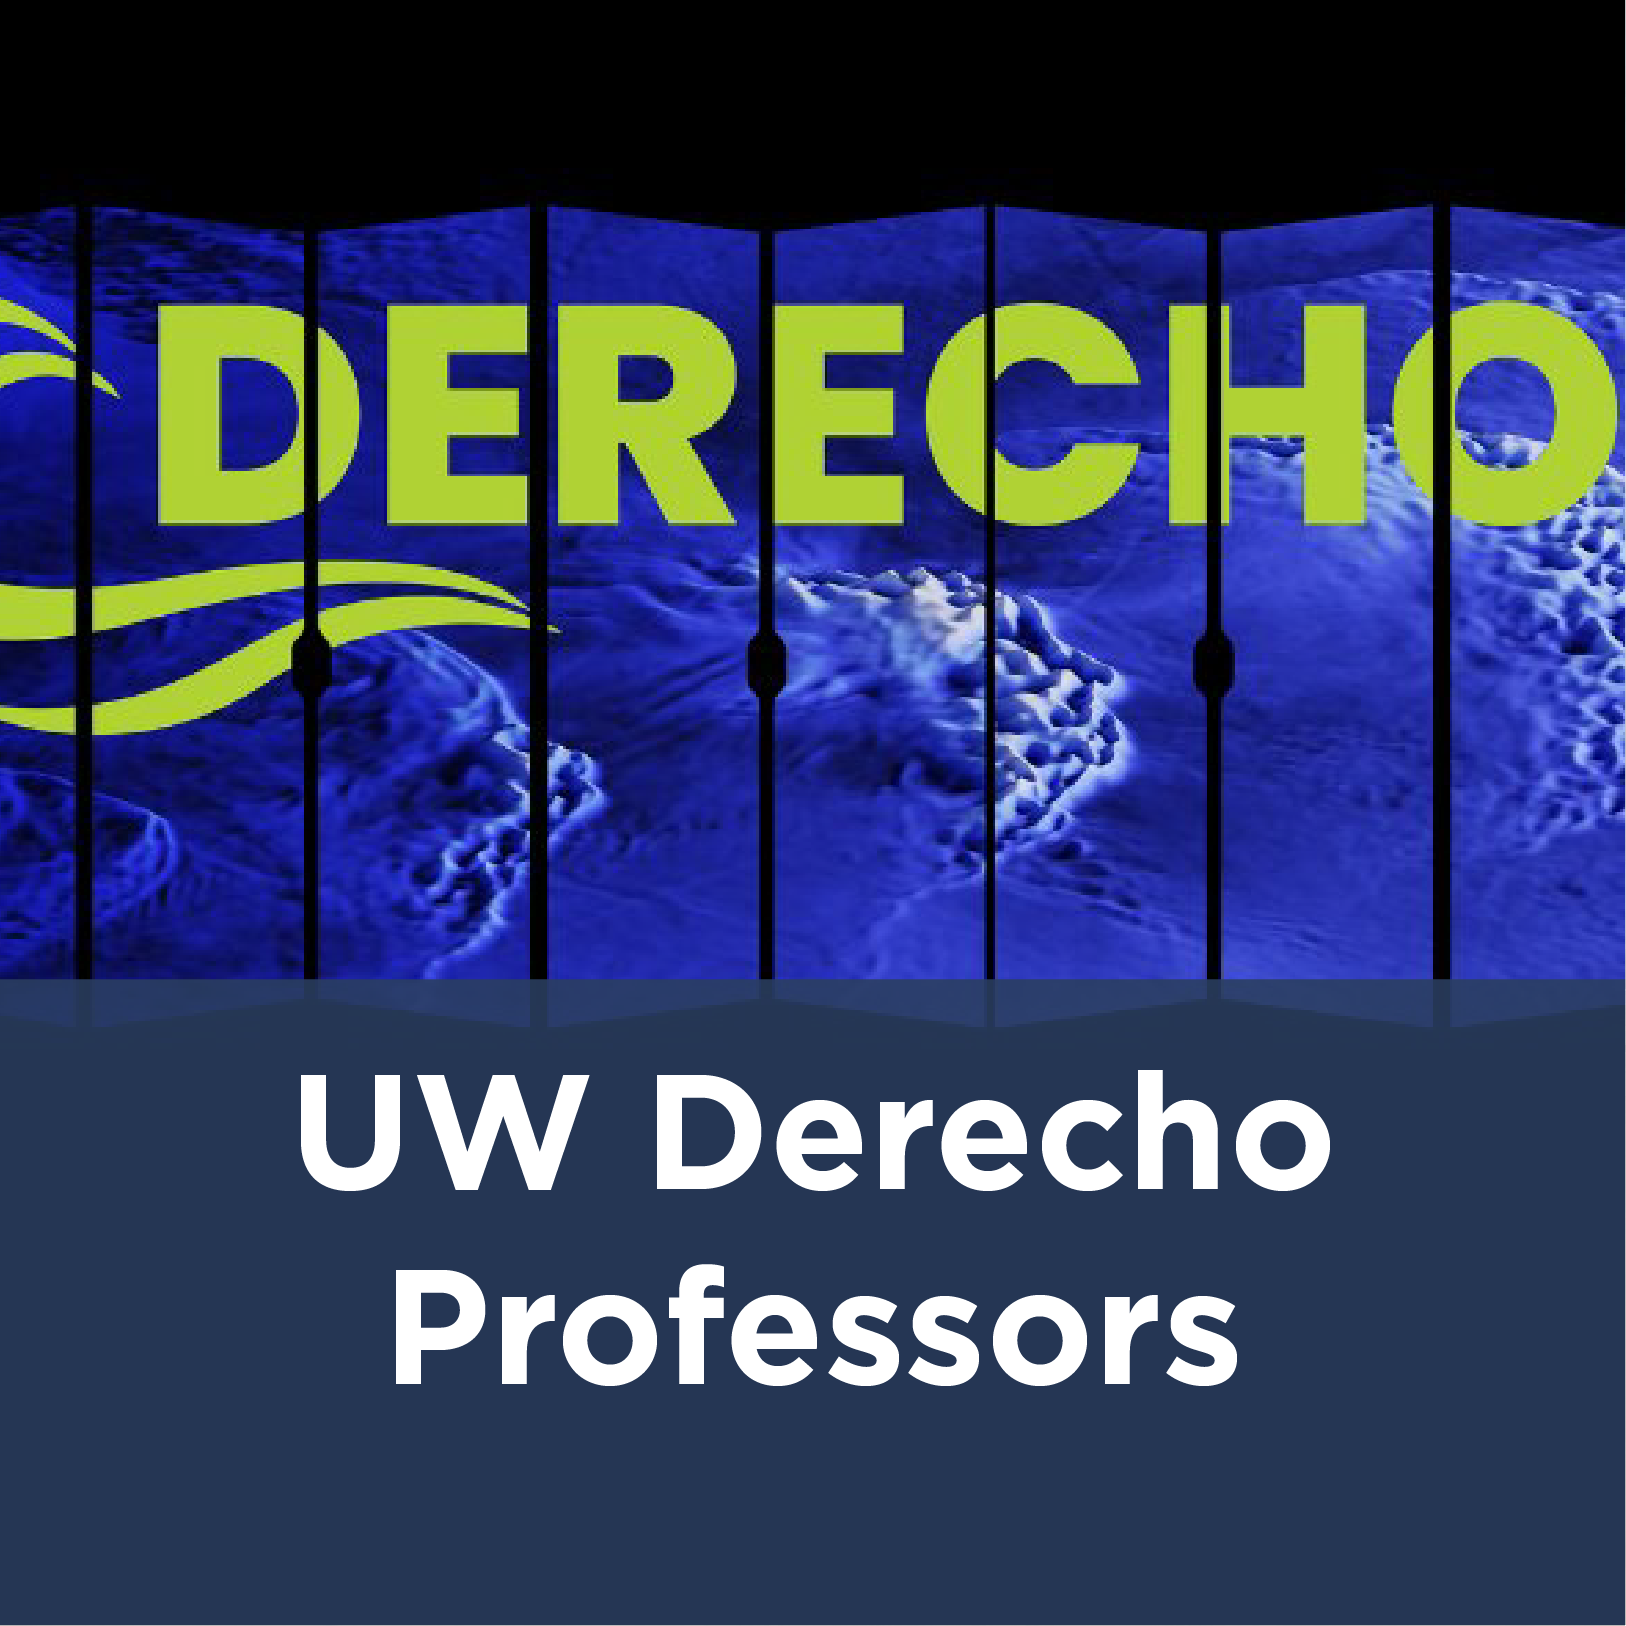 UW Derecho Professors